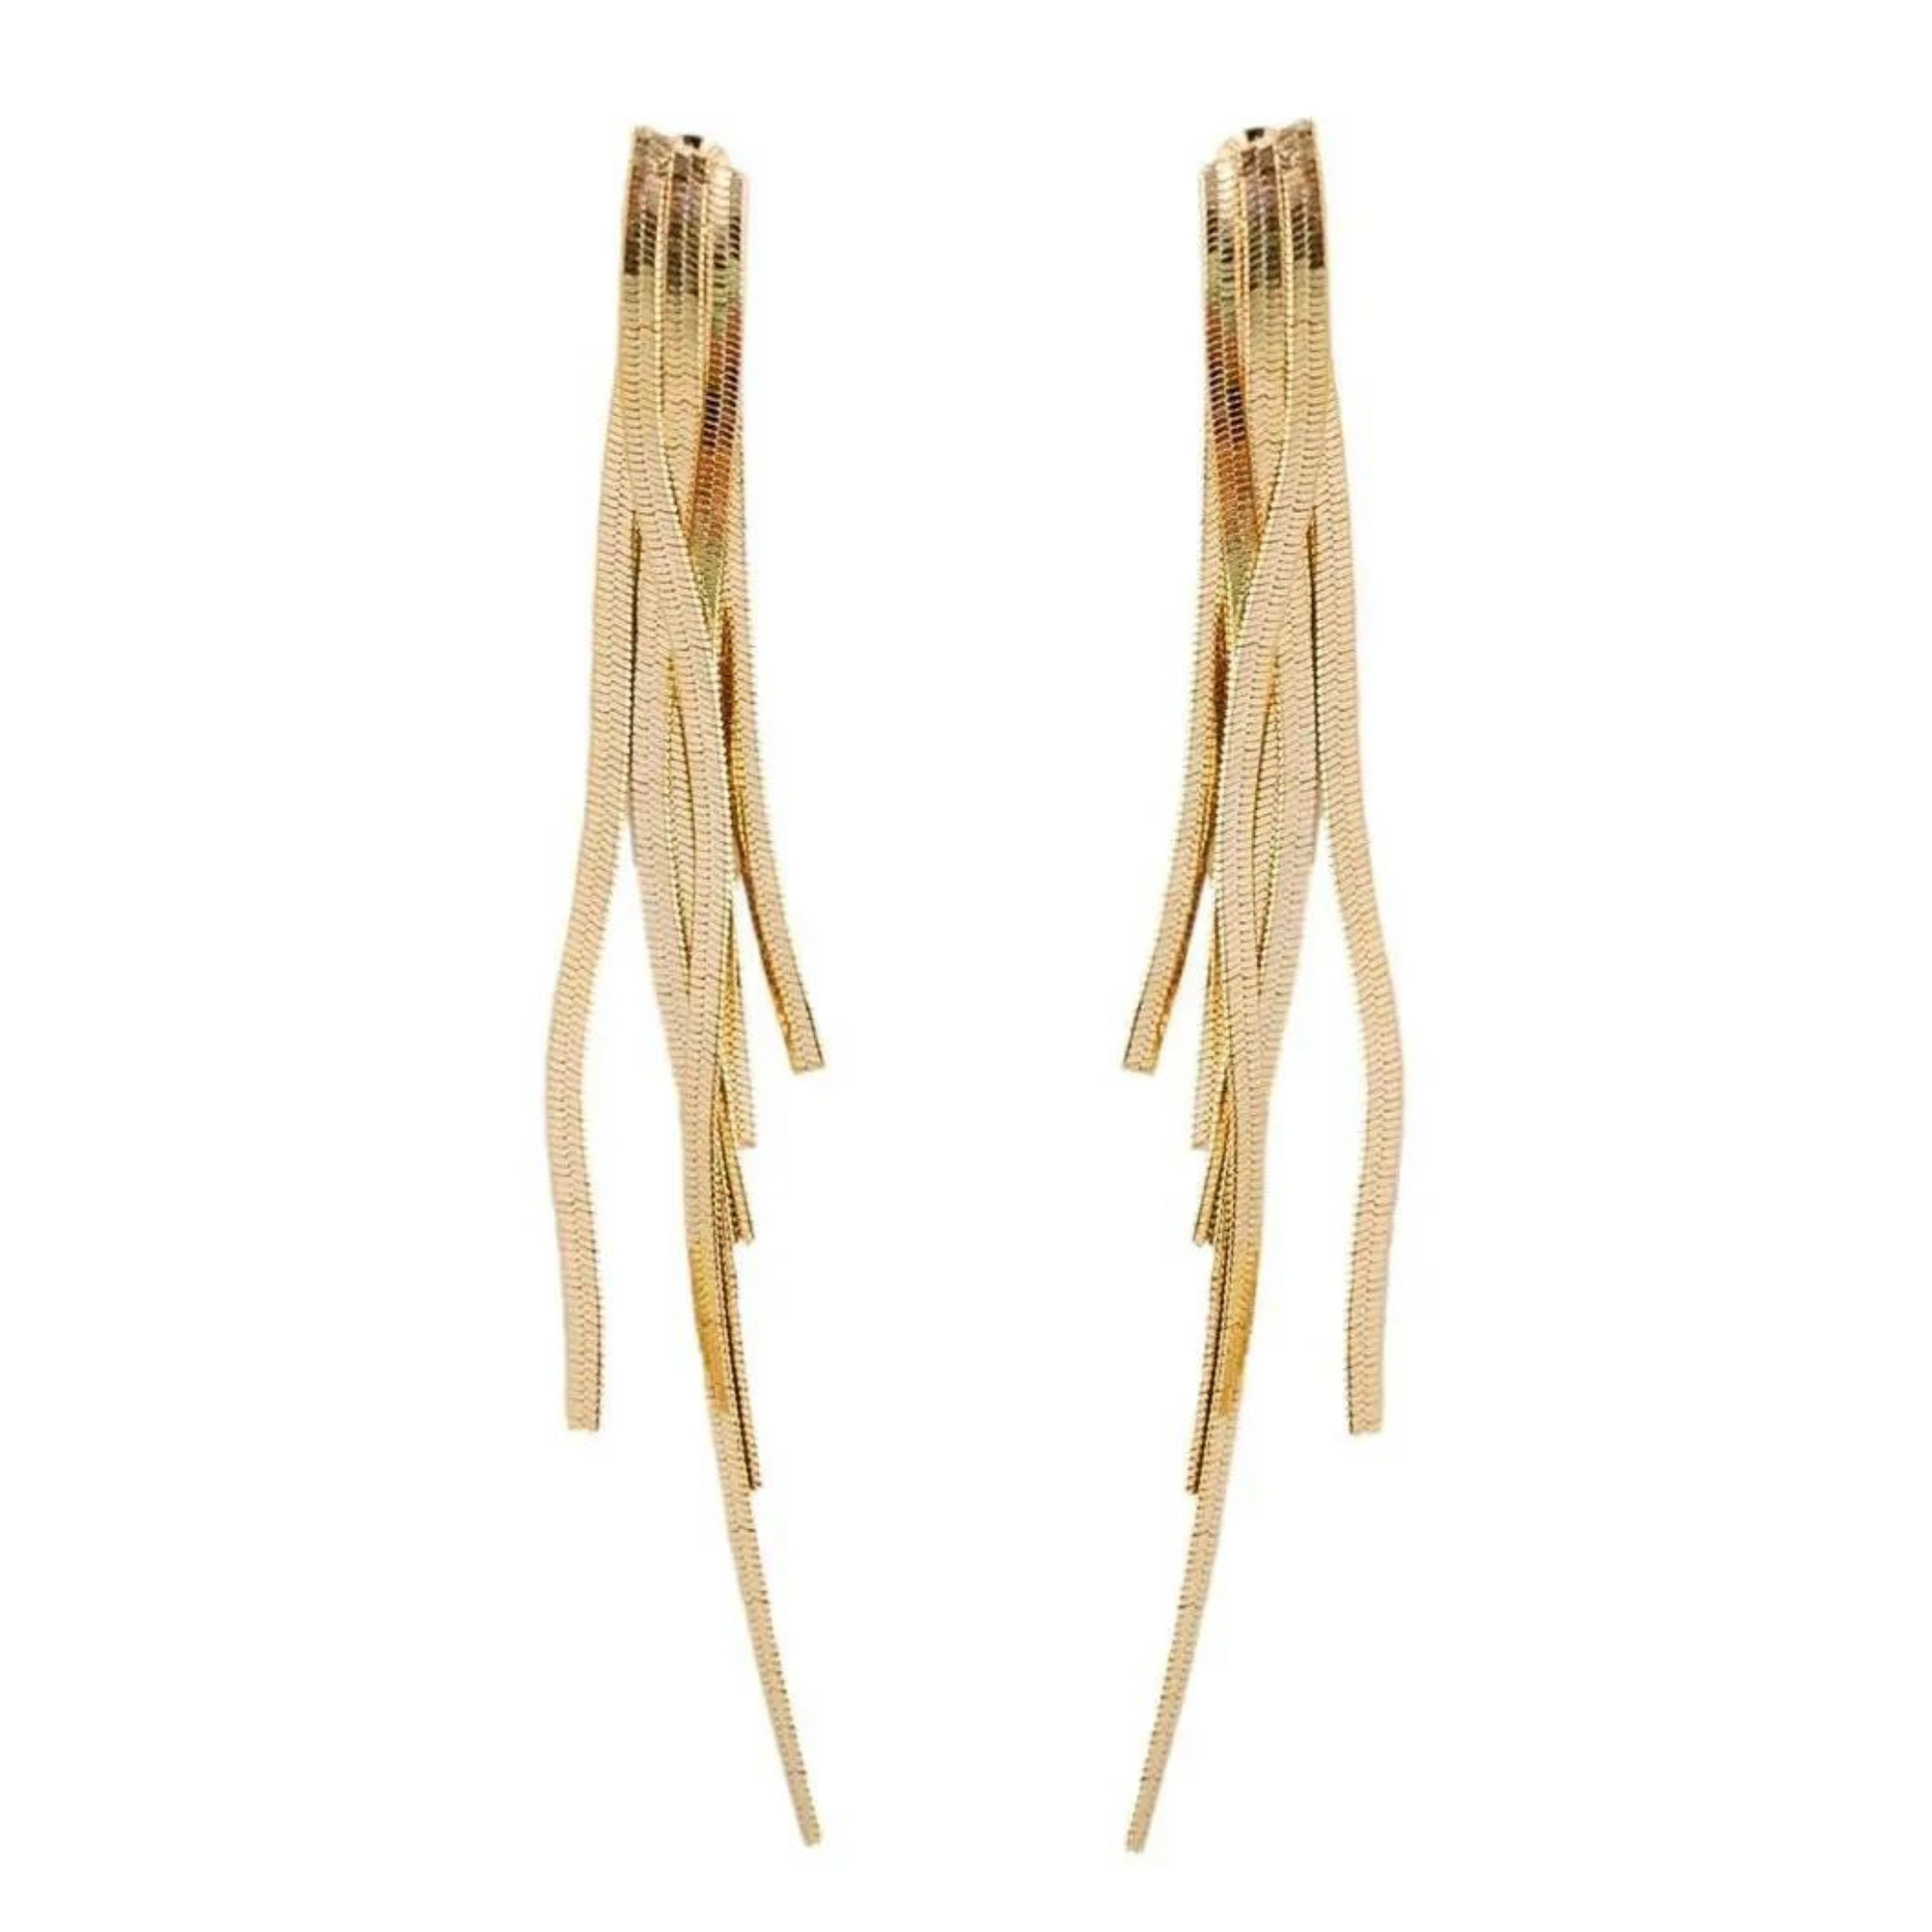 Skinny Gold Cascading Tassel Earrings, Tassel Earrings, Holiday Earrings, Earrings